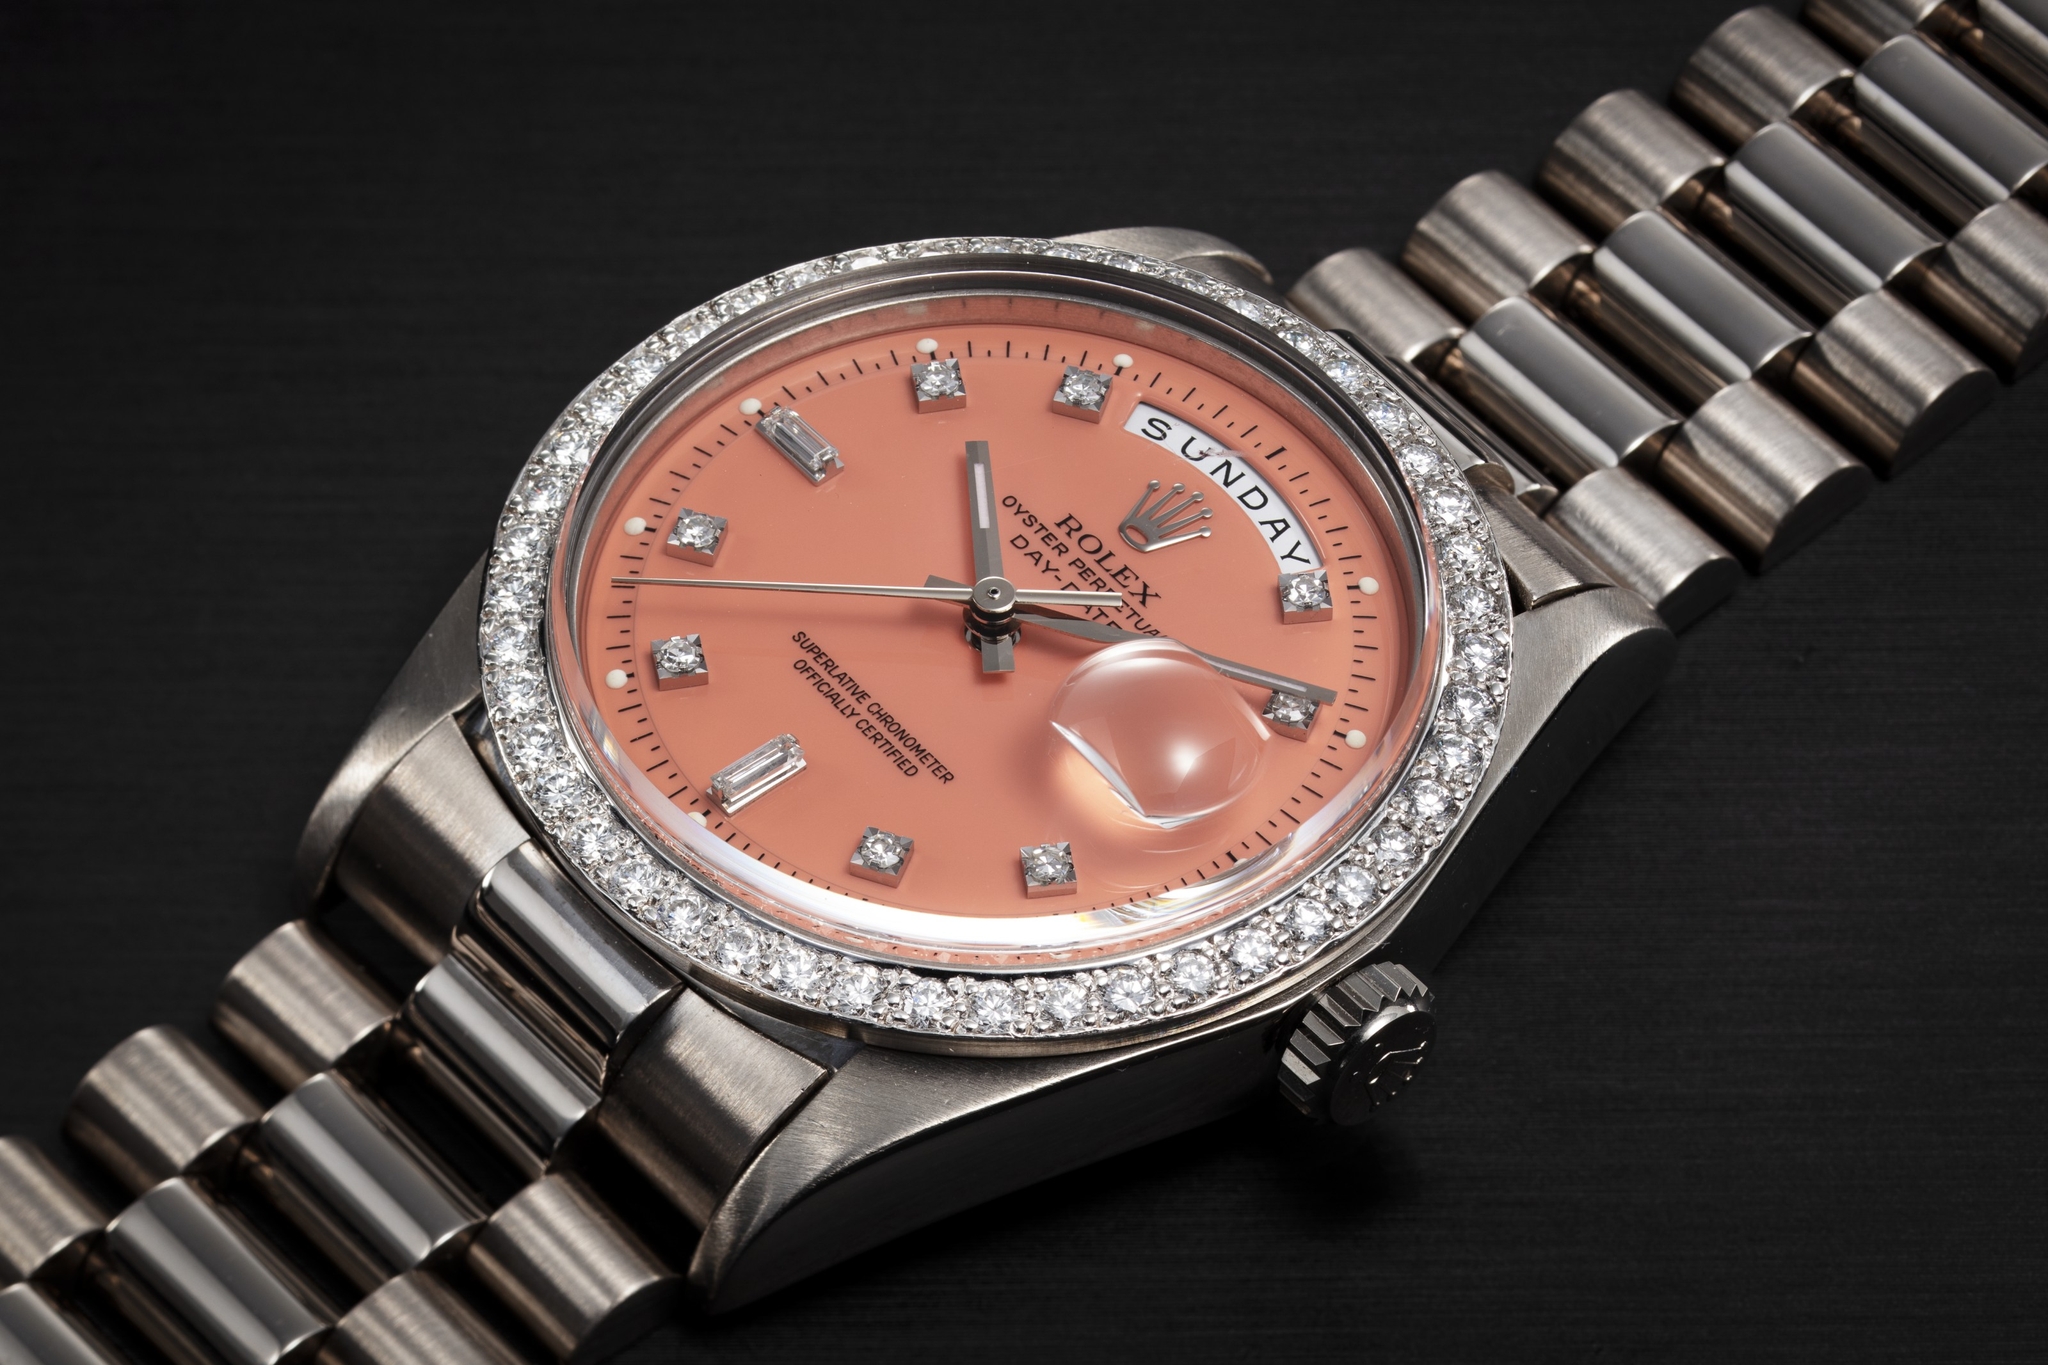 Đồng hồ Rolex Day-Date Stella 1804 được bán với giá 93.750 USD